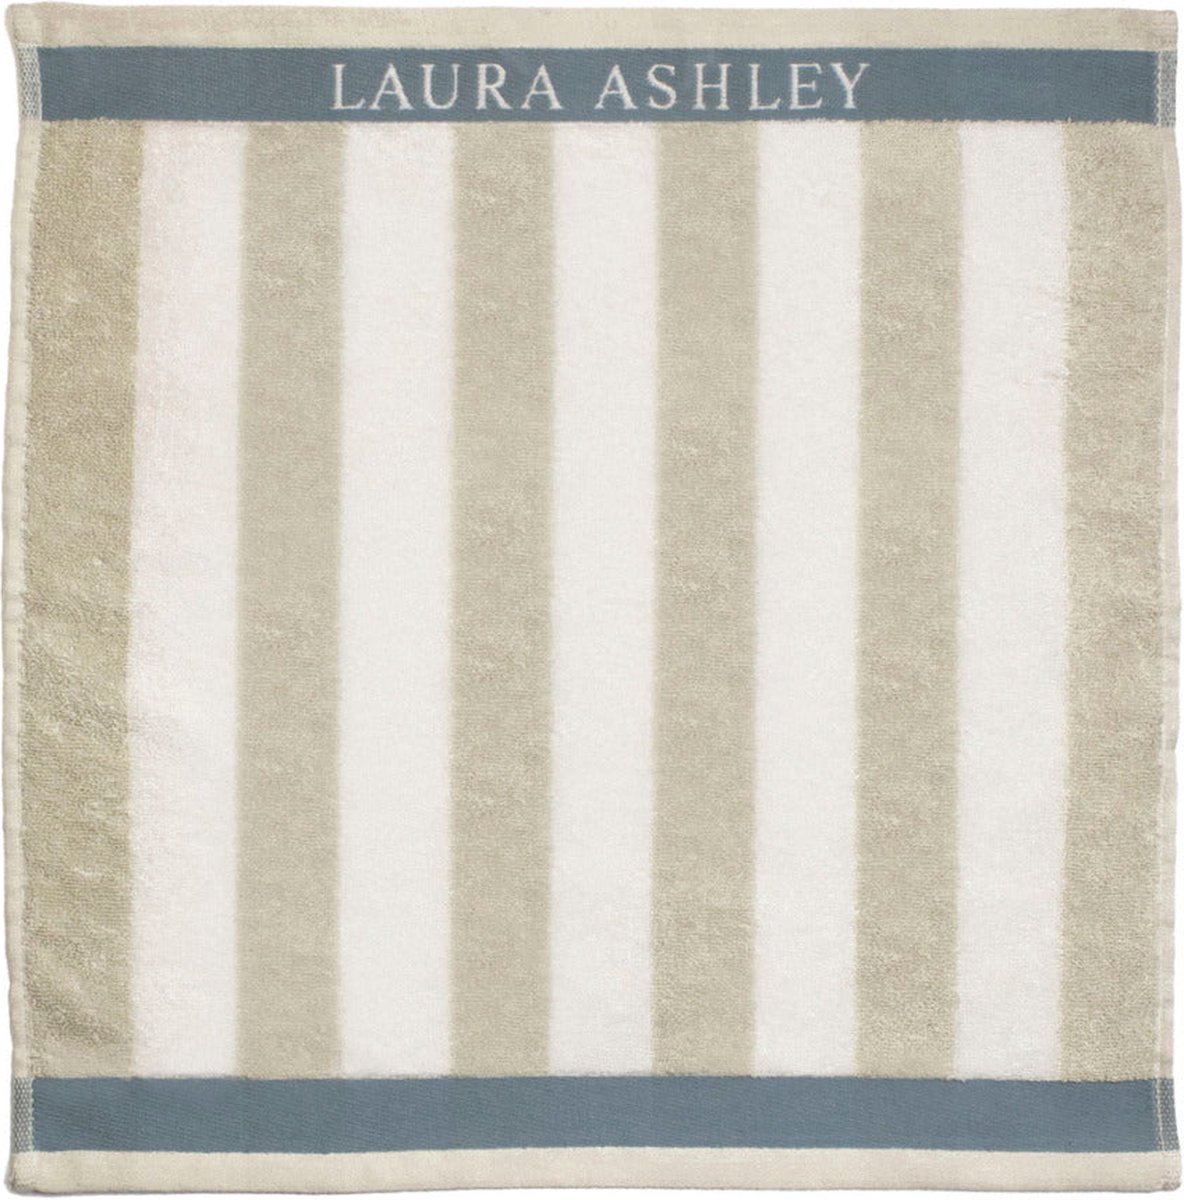 Laura Ashley keukendoek Cobblestone Stripe beige / wit 50 x 50 cm